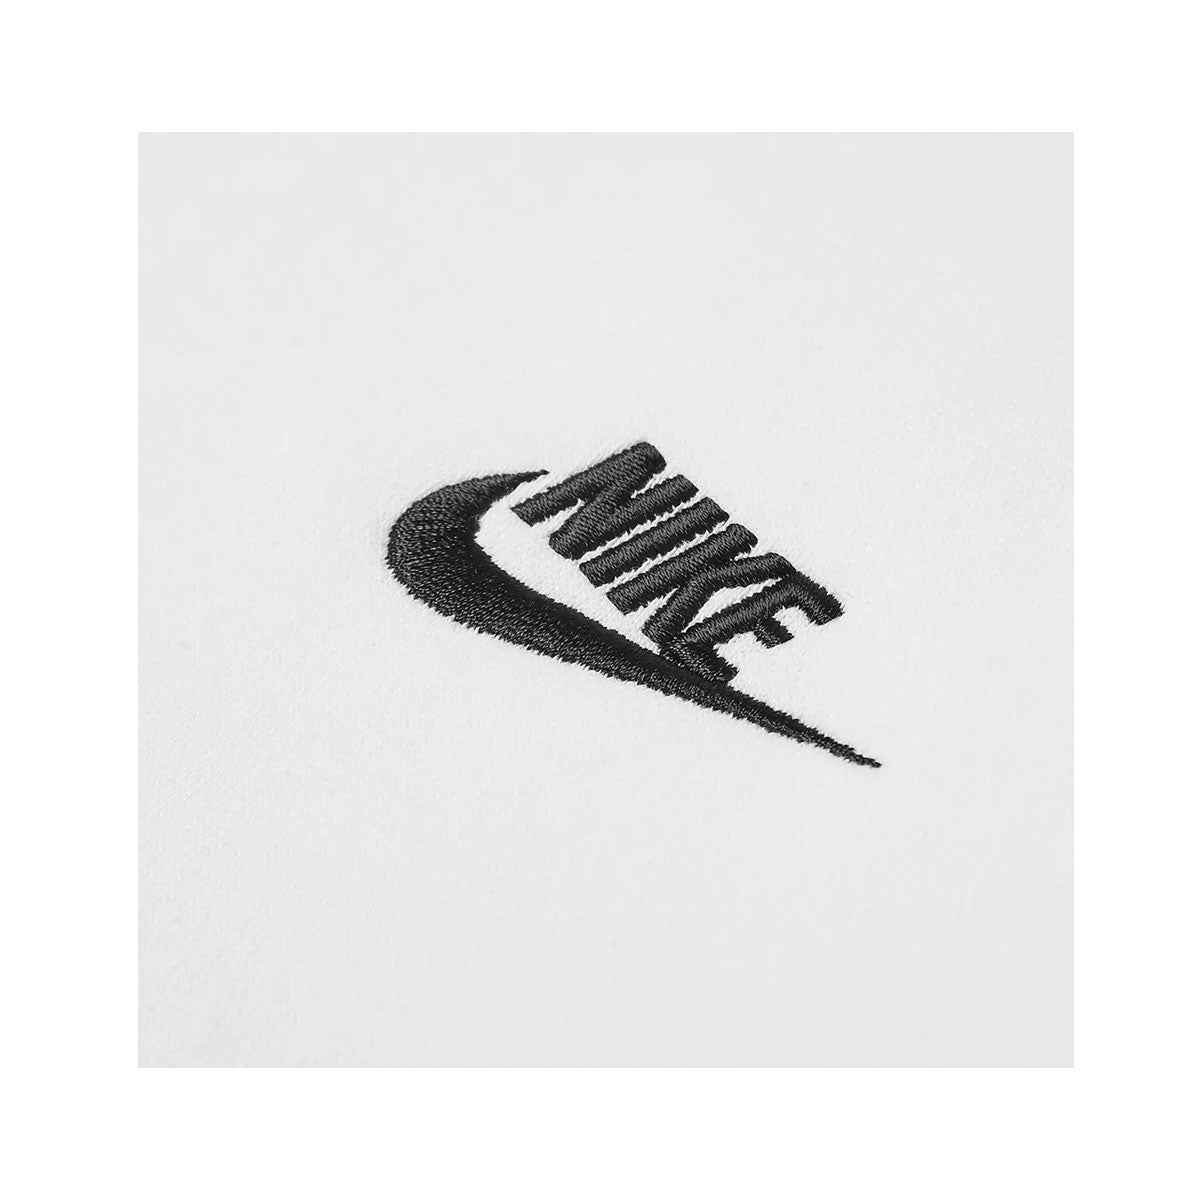 Nike Men's Sportswear Club Sweatshirt - KickzStore